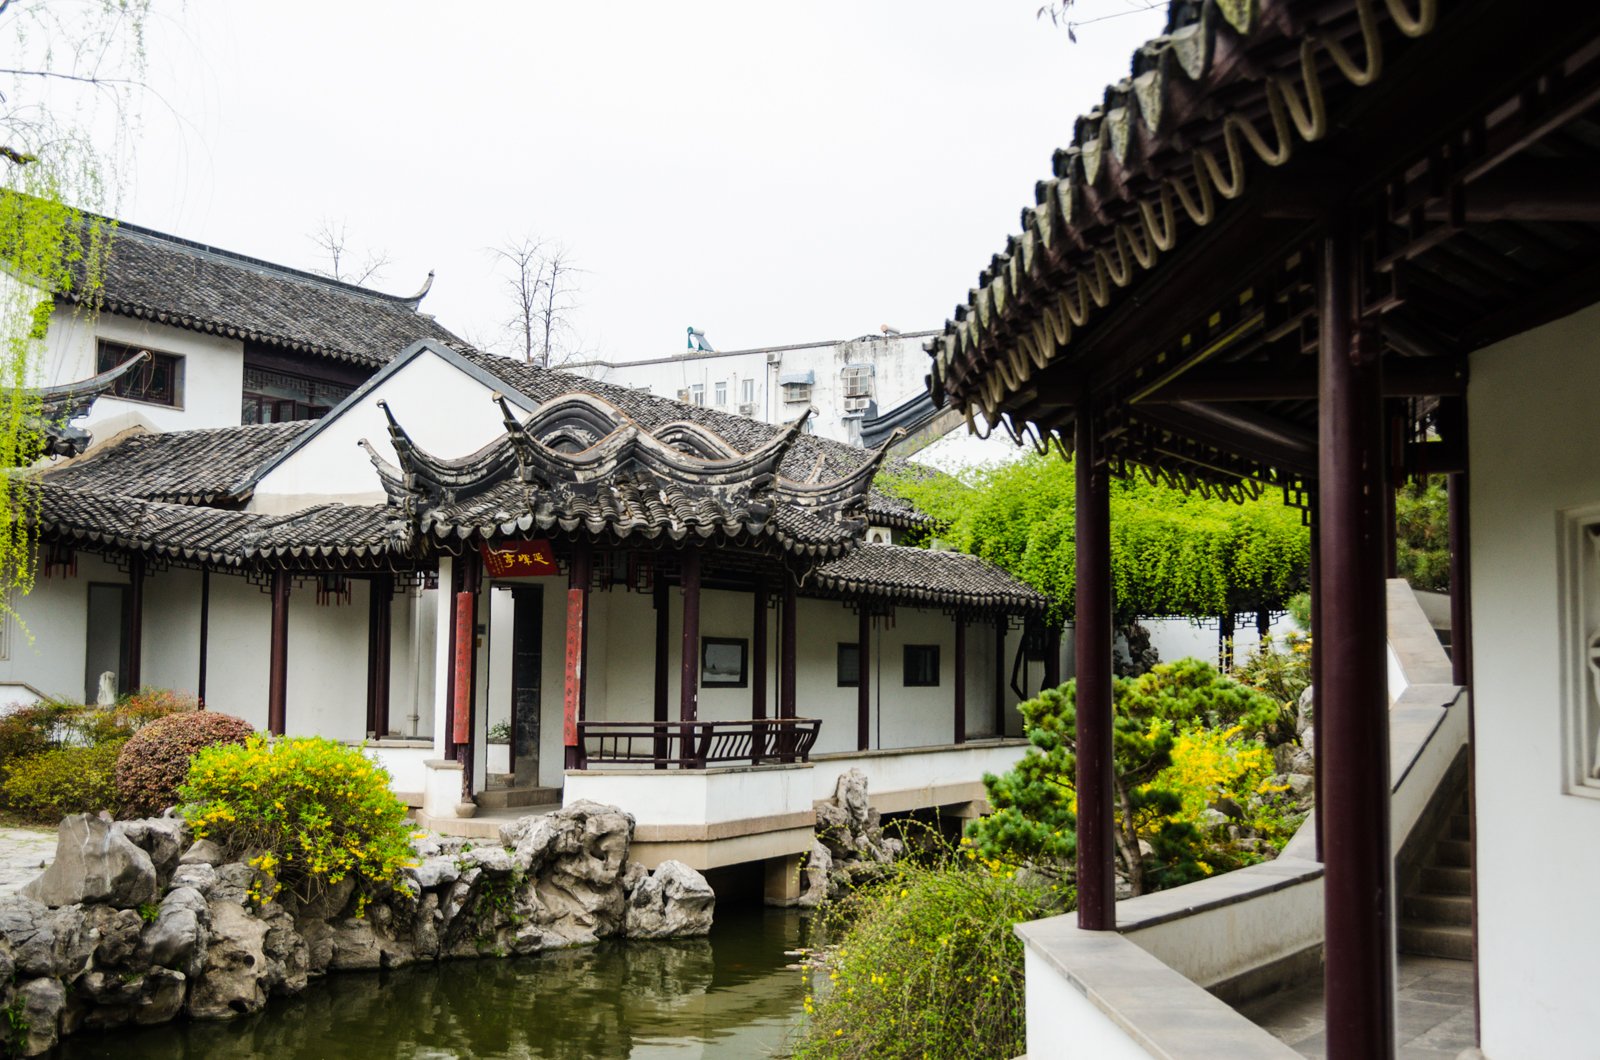 南京好玩的地方排行榜 南京十大旅游景点排名 - 手工客